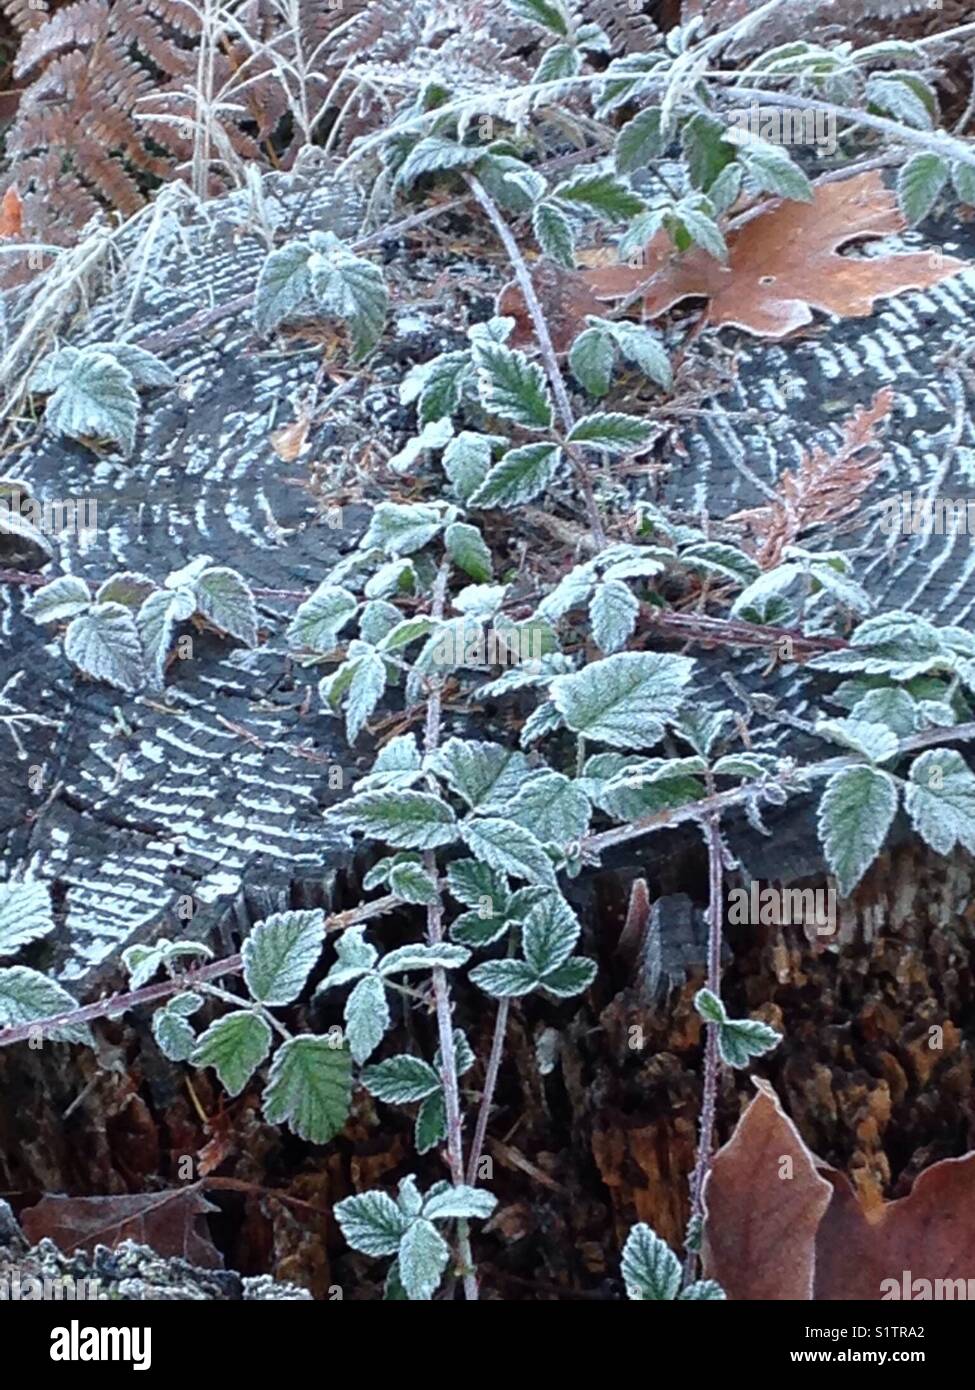 Blackberry dornigen Ranken klettern über einen Baumstumpf - Frost in Muster um den Stumpf Stockfoto